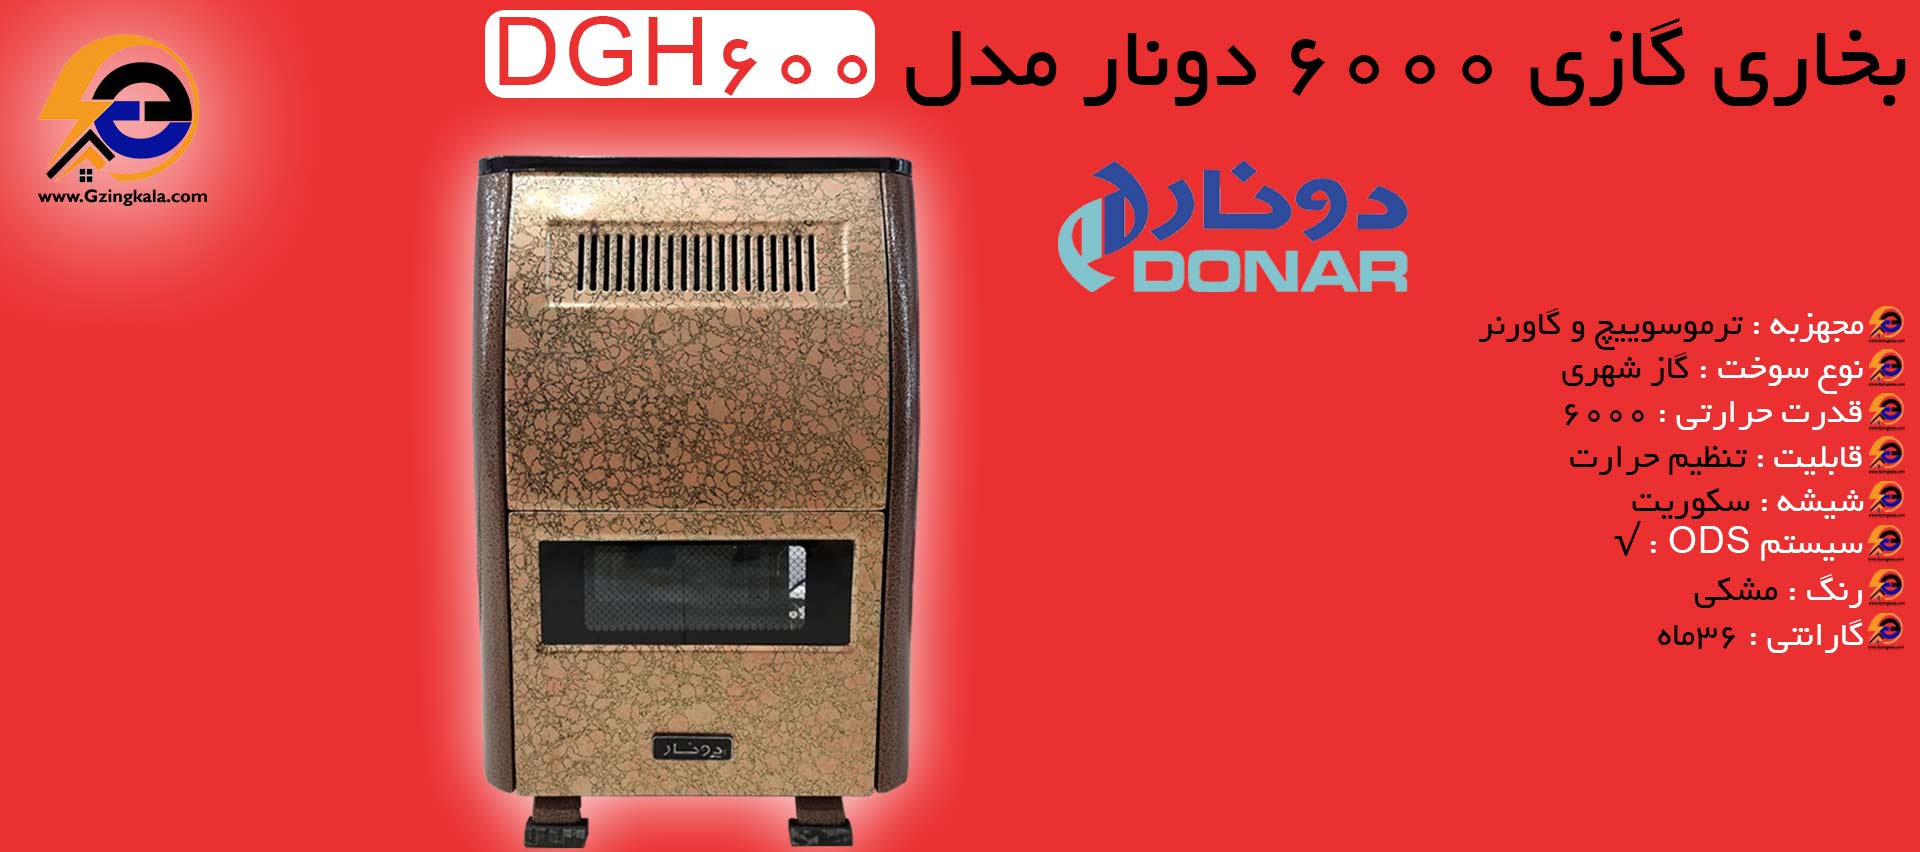 بخاری گازی 6000 دونار مدل DGH600